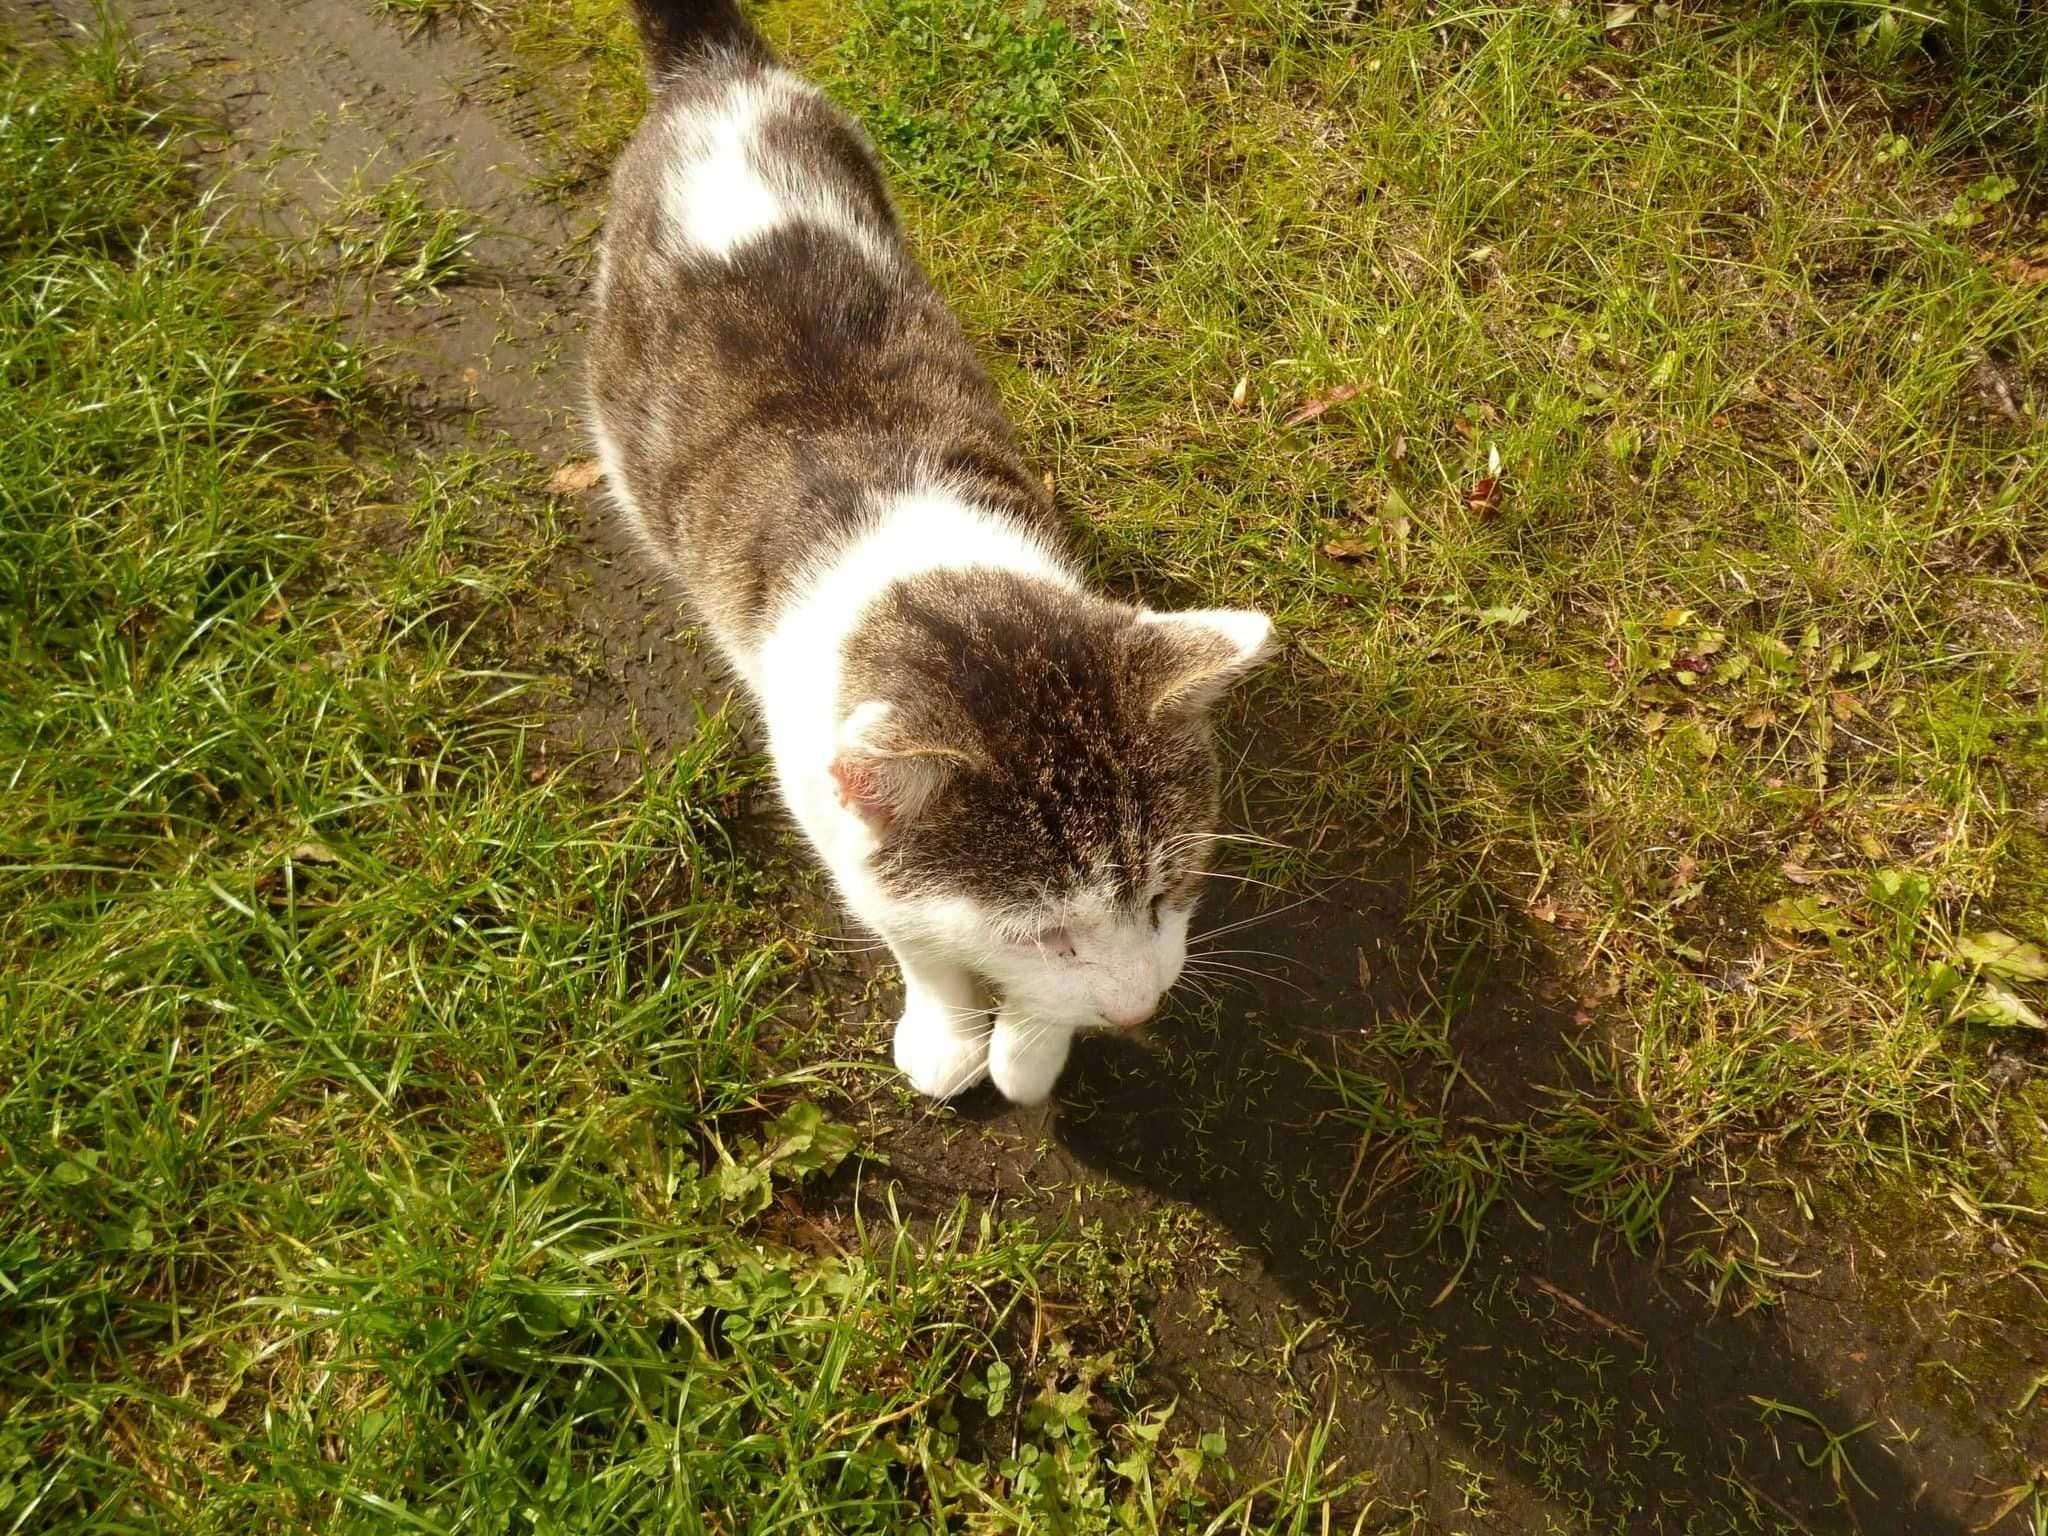 Boluś ok.2 let piękny kochany porzucony kotek szuka domu. Izabela Piet